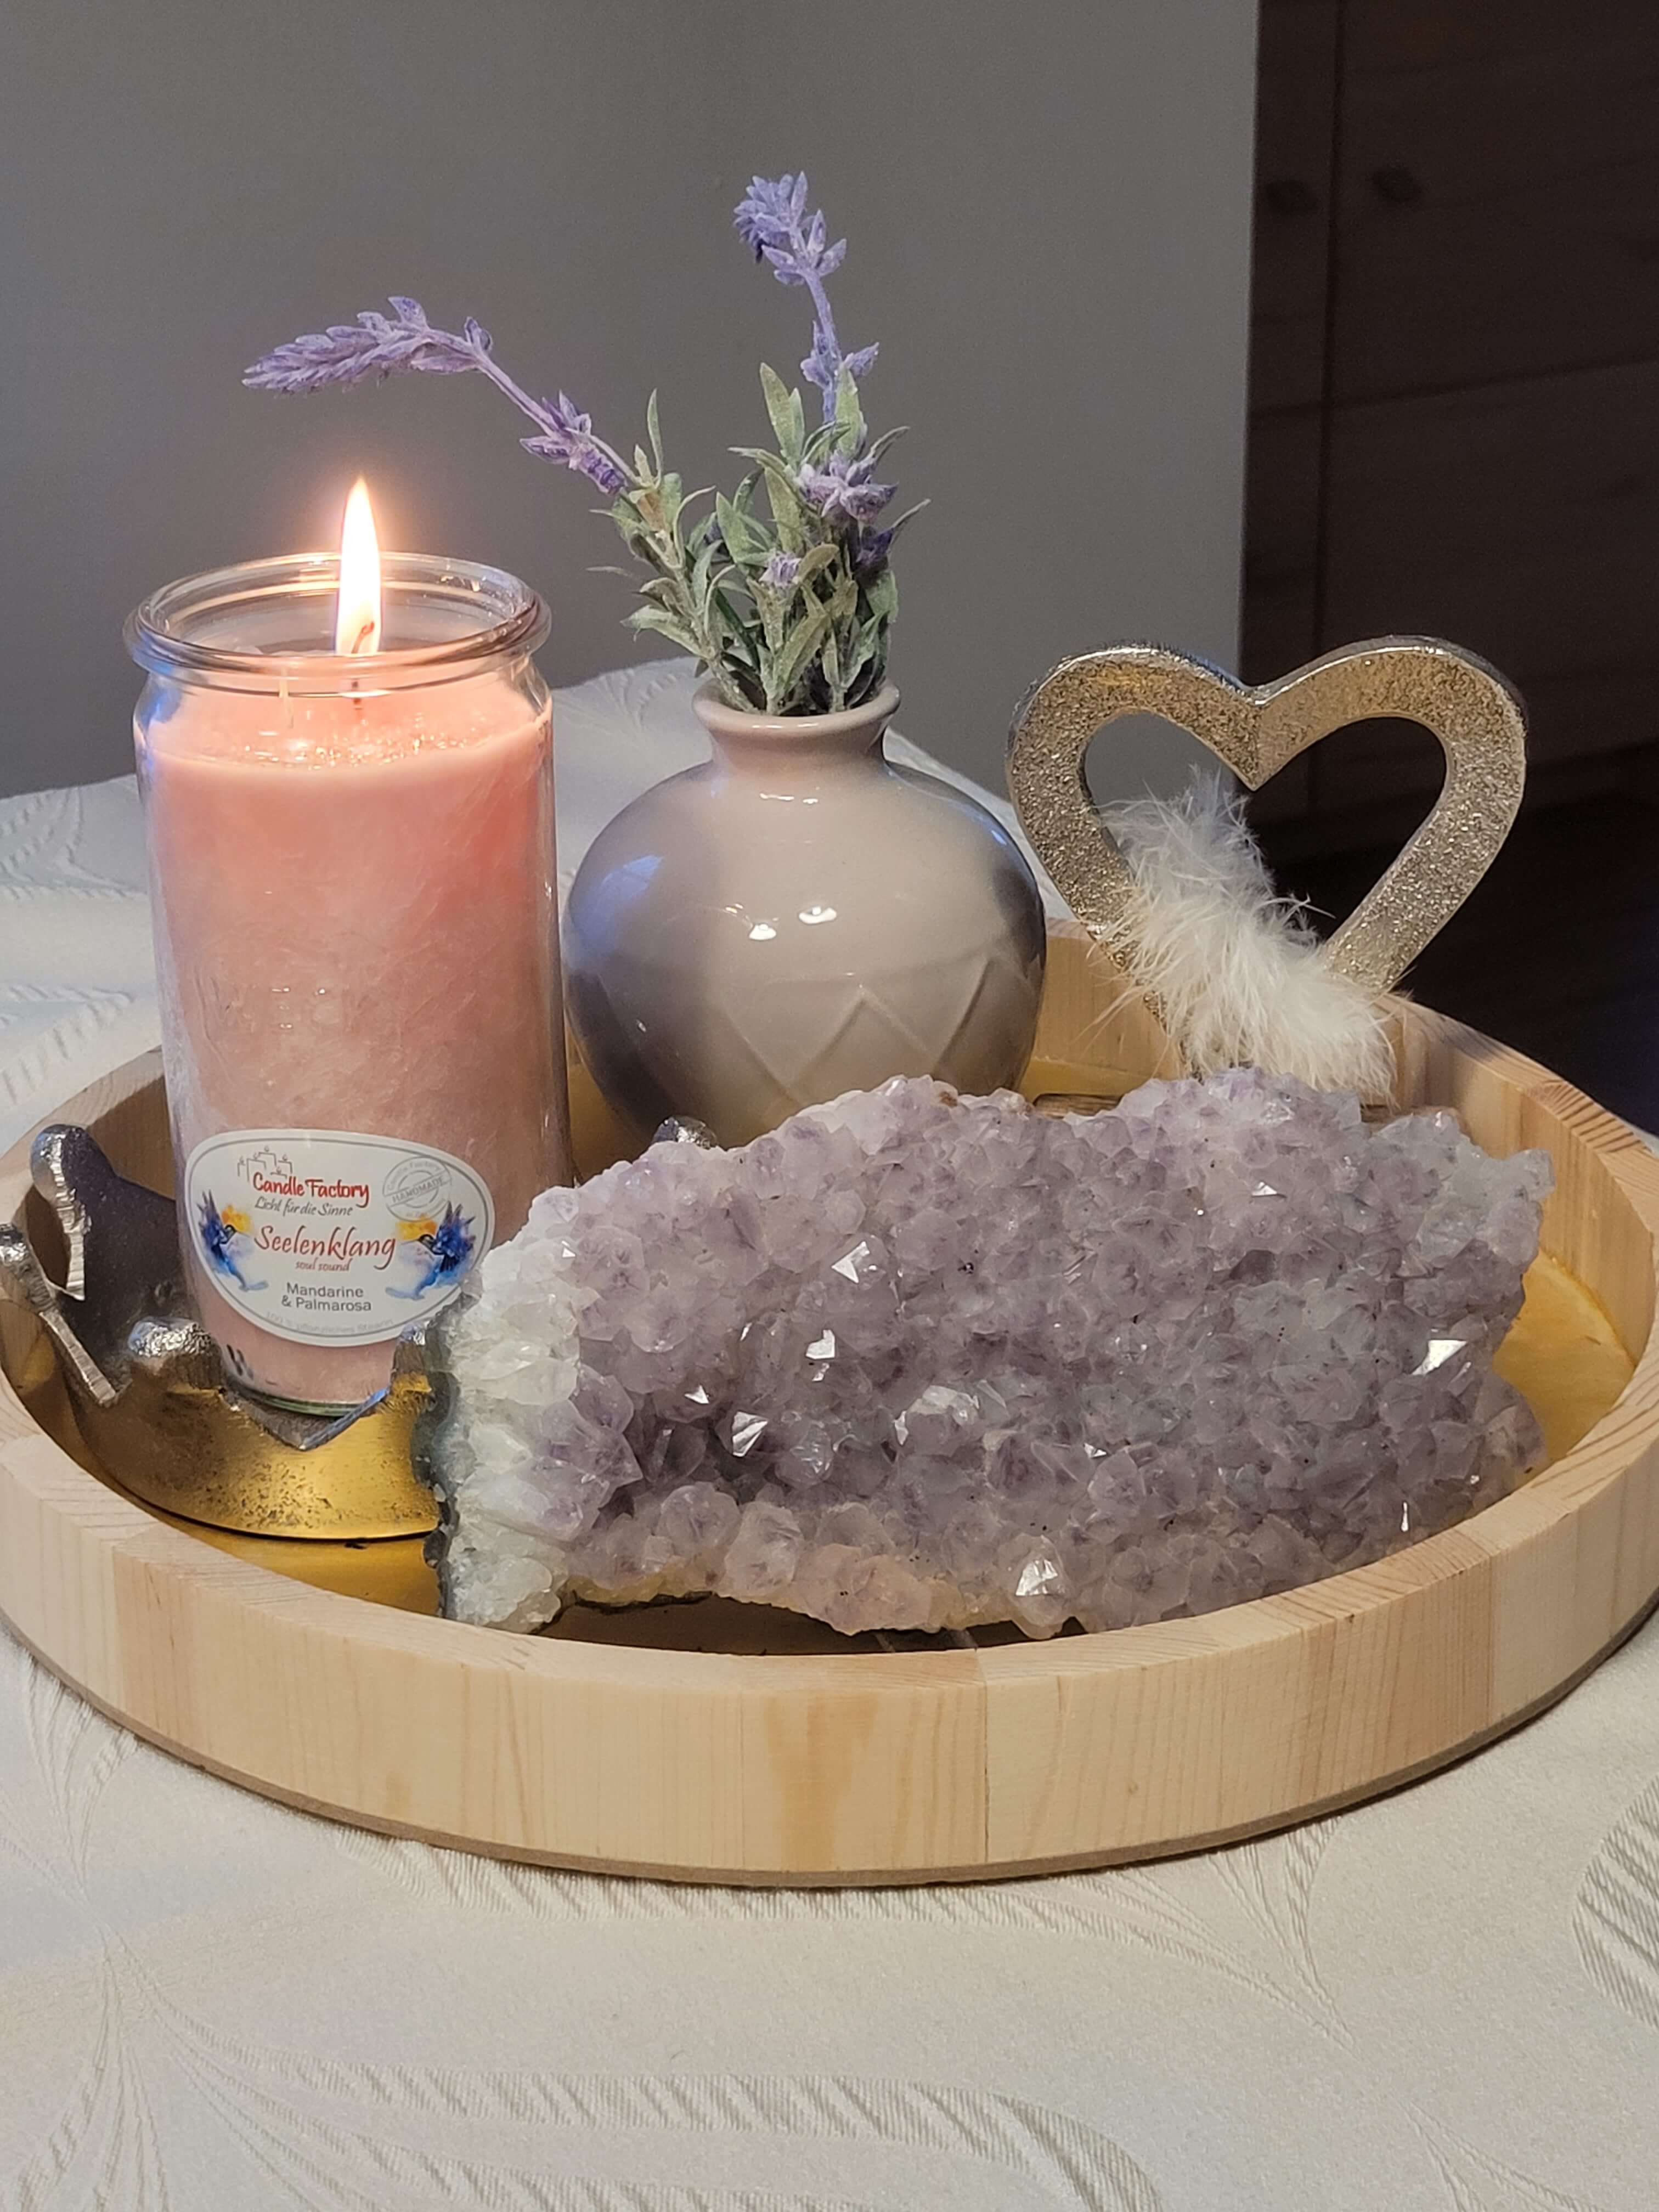 Brennende Kerze auf einem Holztablett mit einer Amethyst-Druse und einer Vase, in der Lavendelzweige stecken.